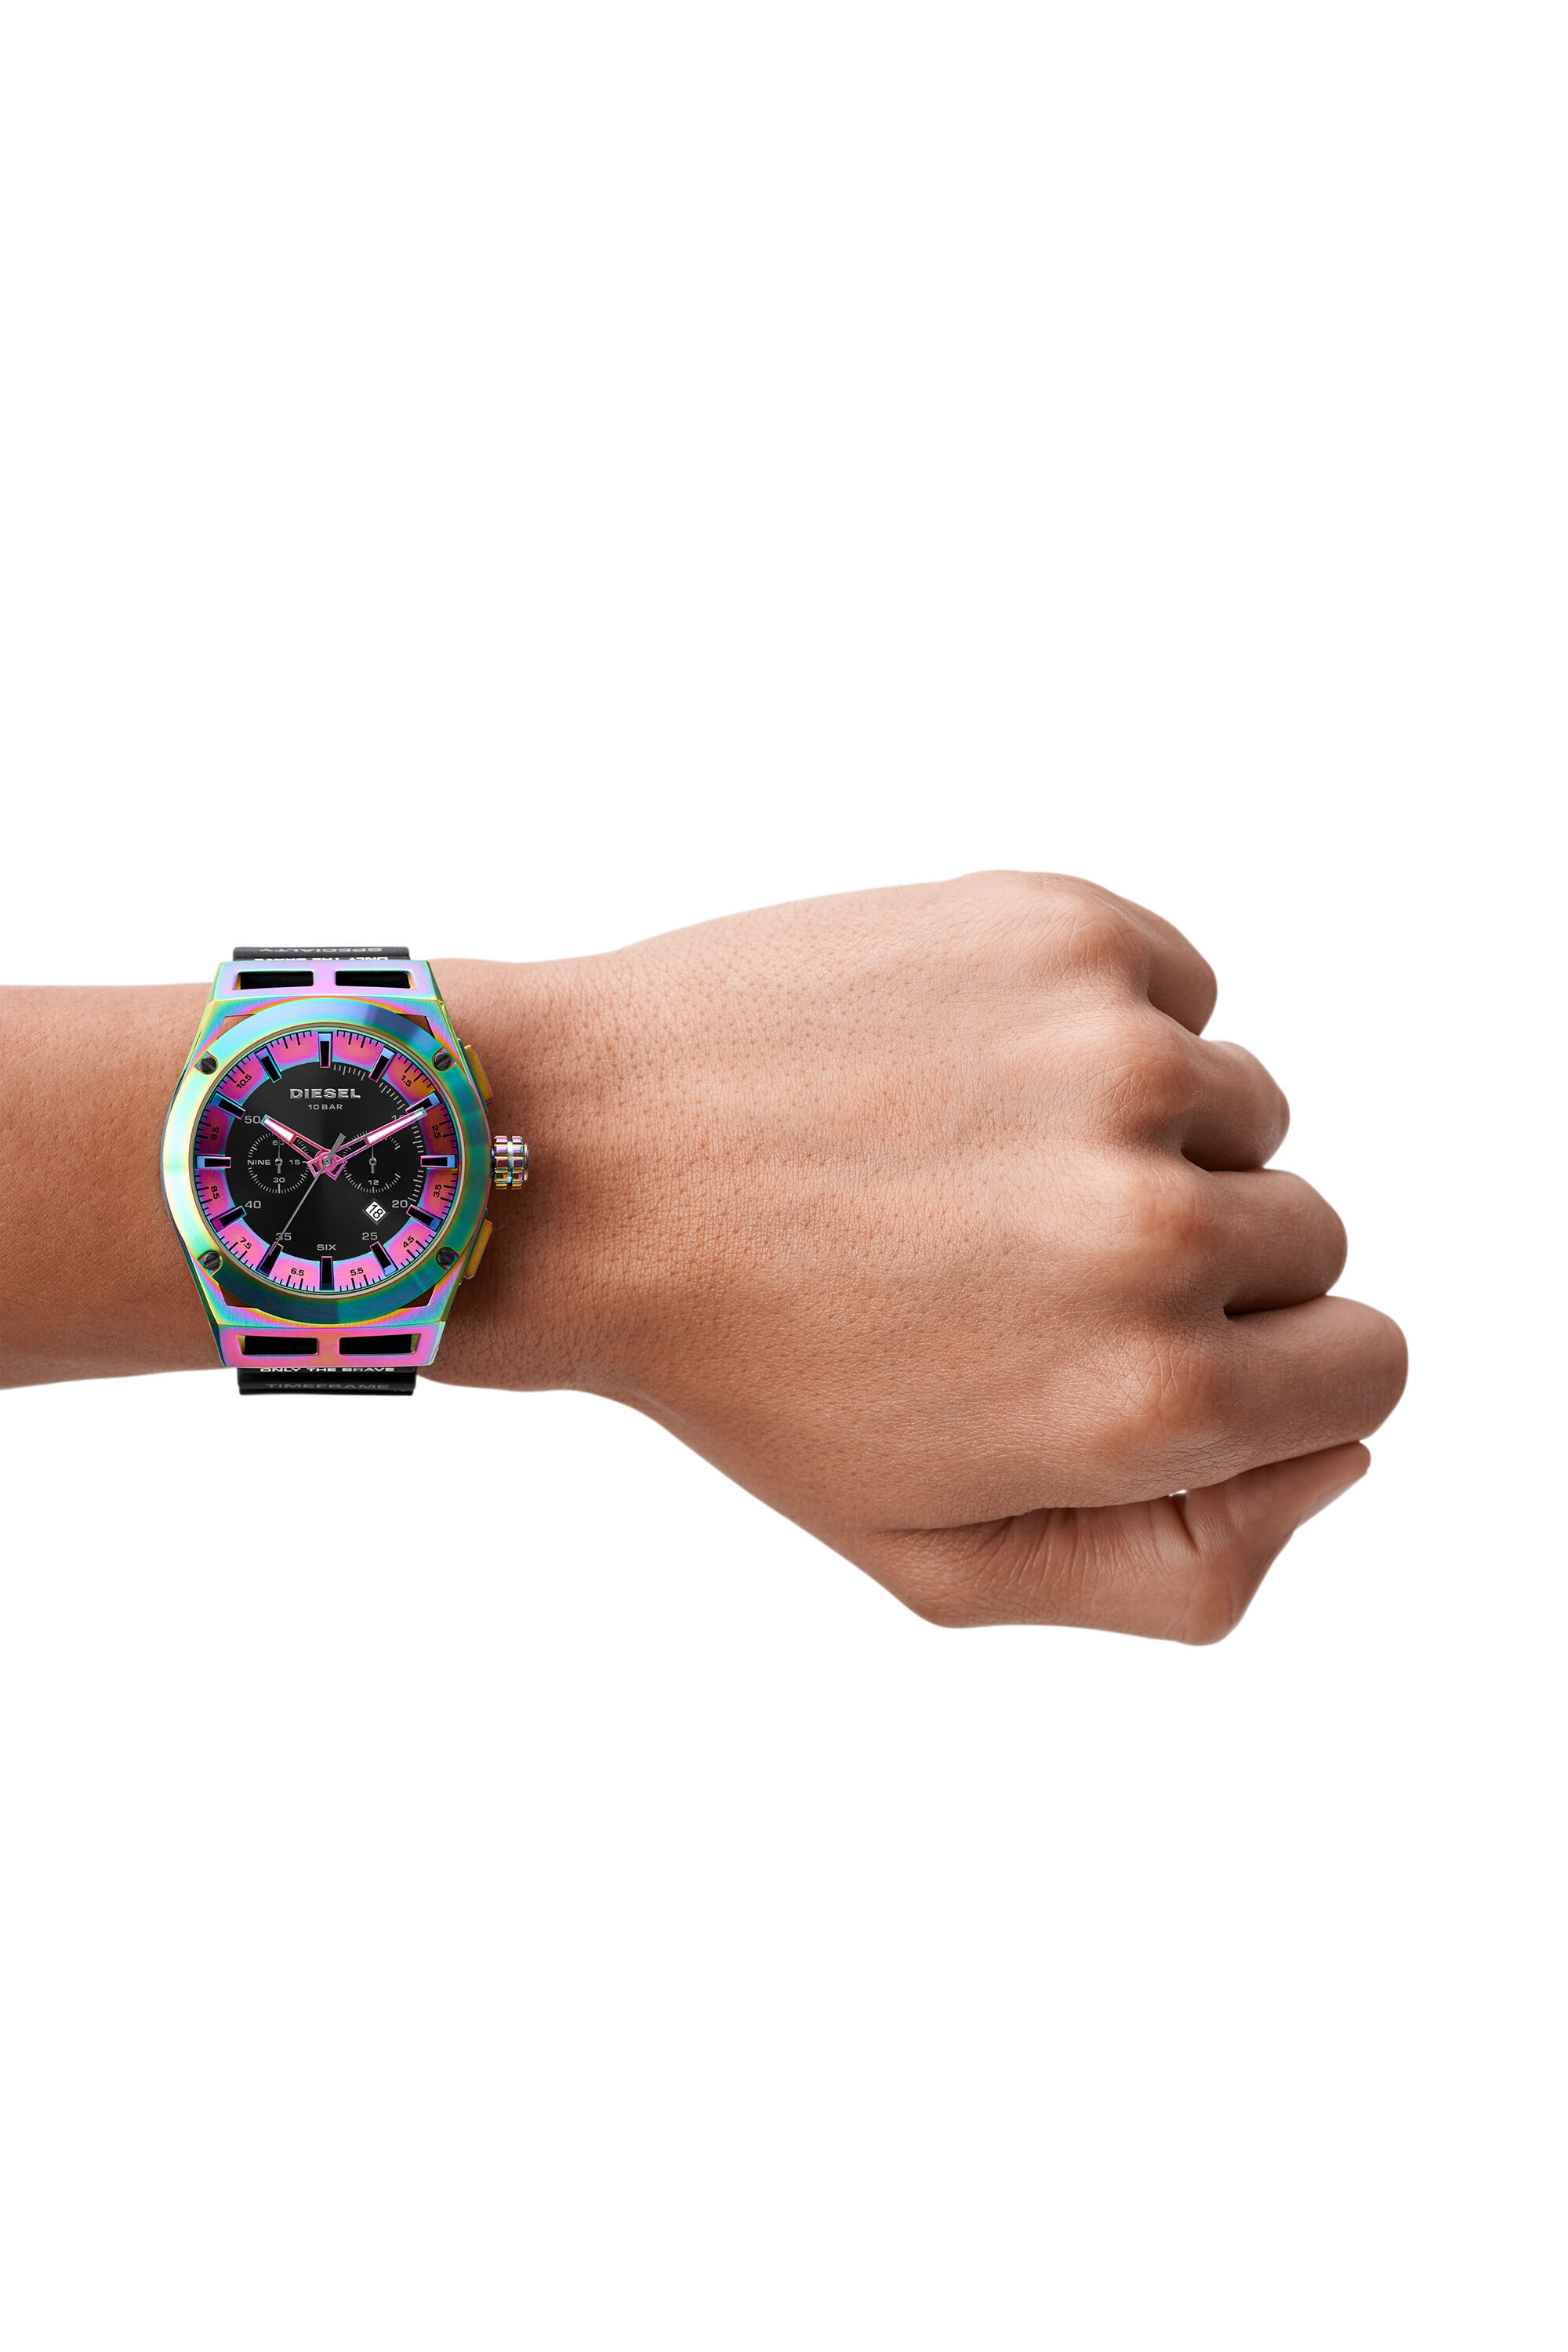 新品✨ディーゼル DIESEL メンズ クロノ 腕時計 DZ4547 ブラック